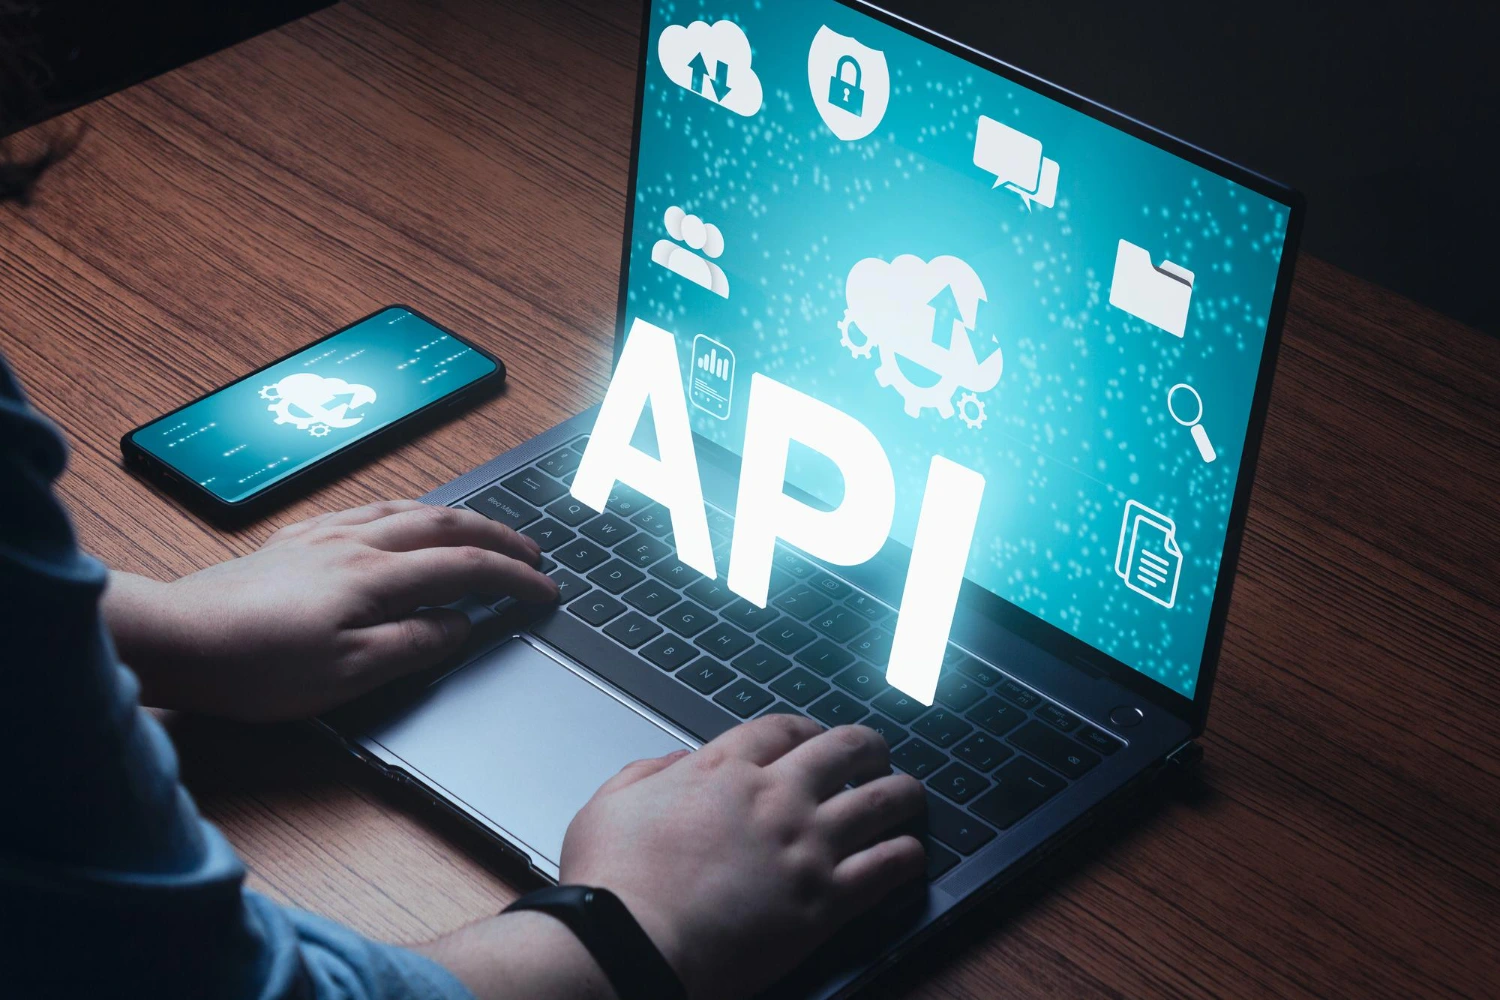 Desenvolvimento de API